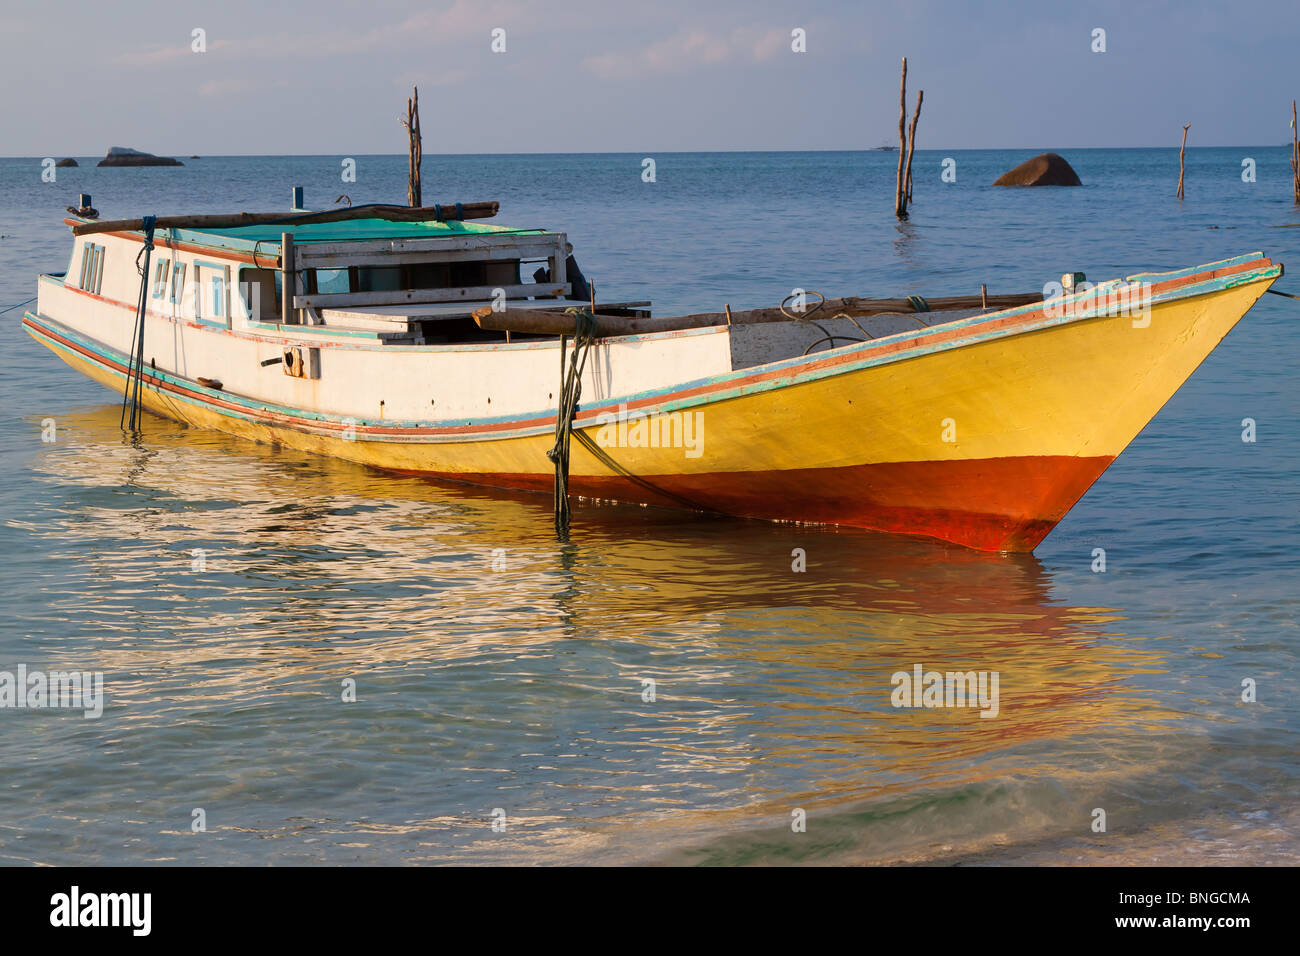 Bateau de pêche, l'île de l'Indonésie Belitung Banque D'Images